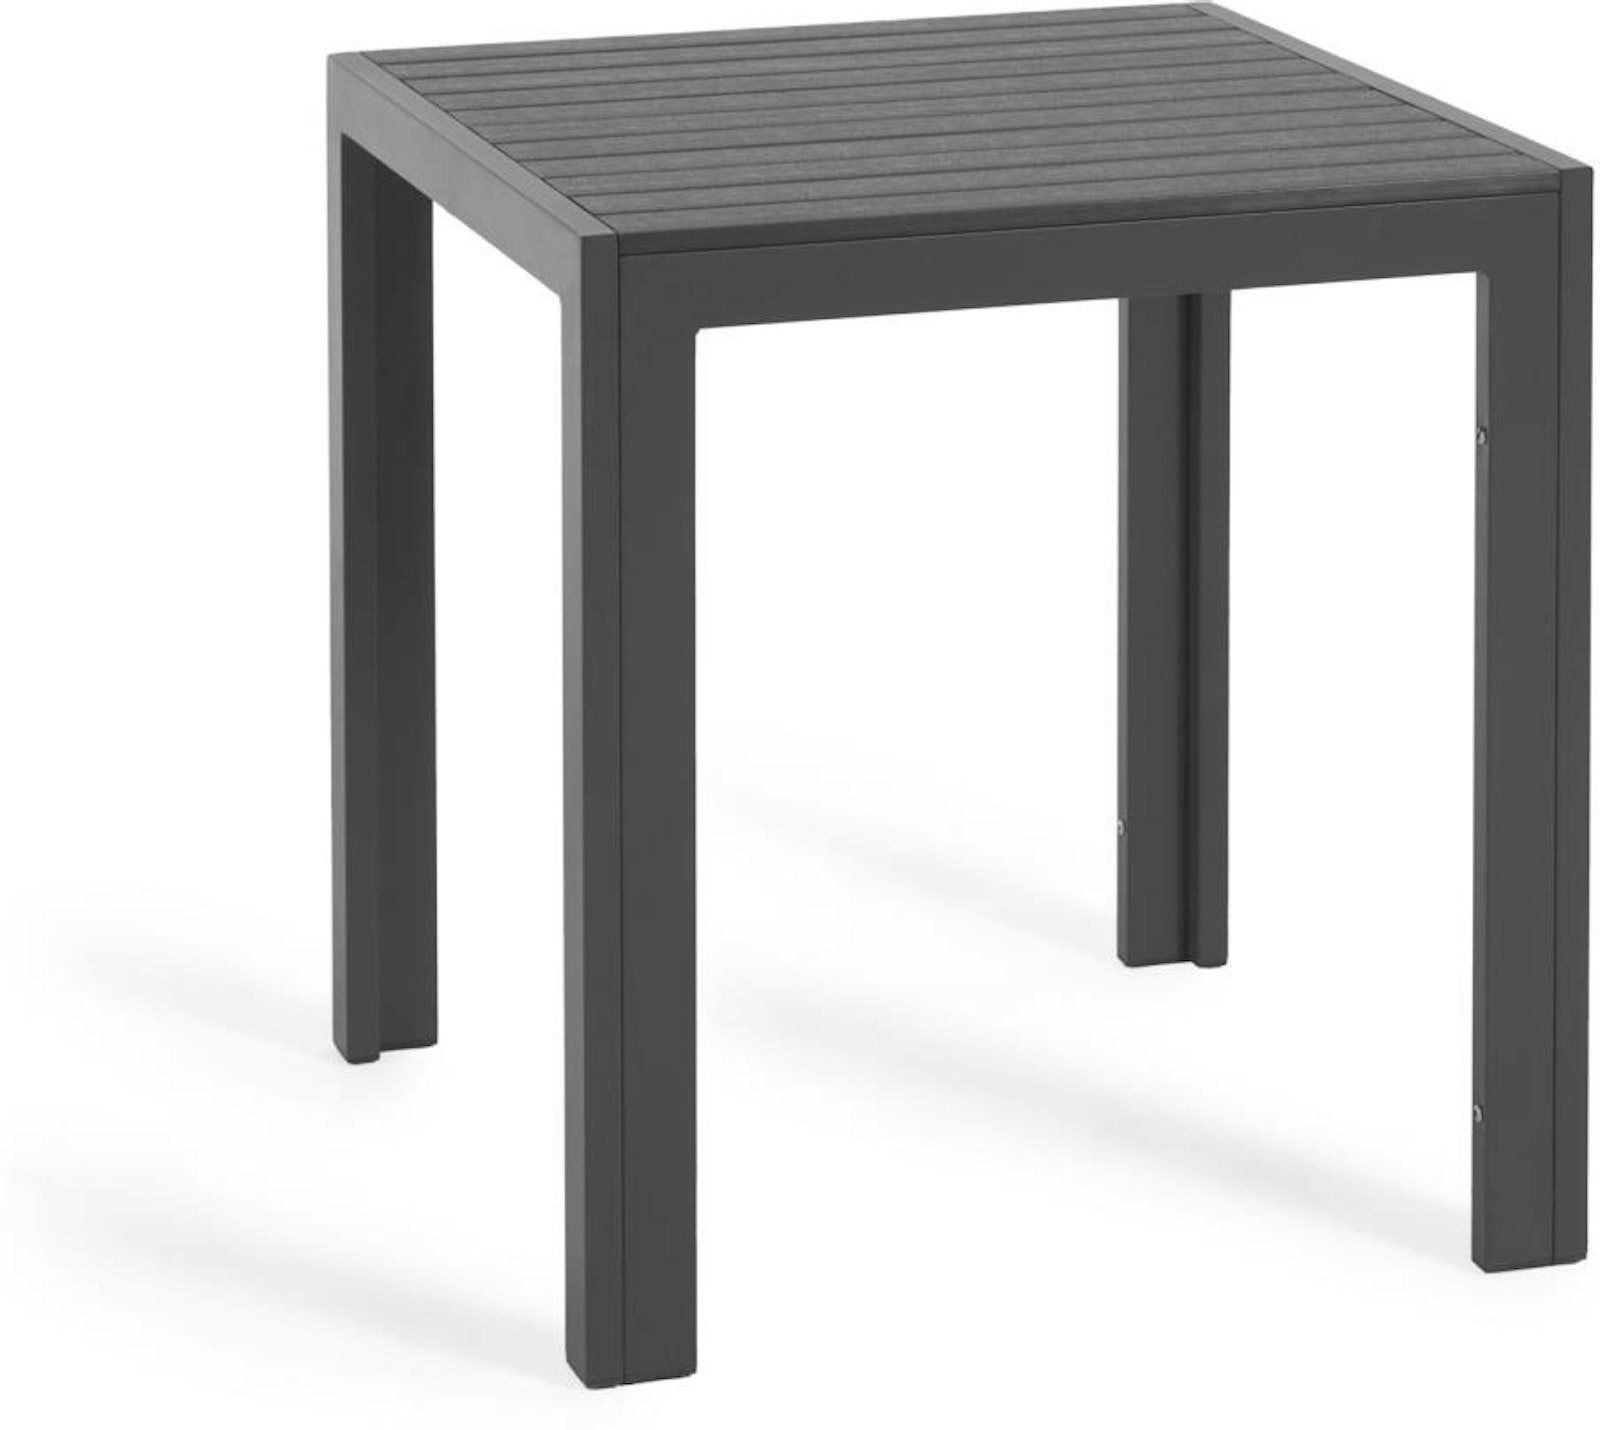 Køb Sirley, Udendørs bord, moderne, metal by Laforma (H: 75 cm. x B: 70 cm. x L: 70 cm., Sort)